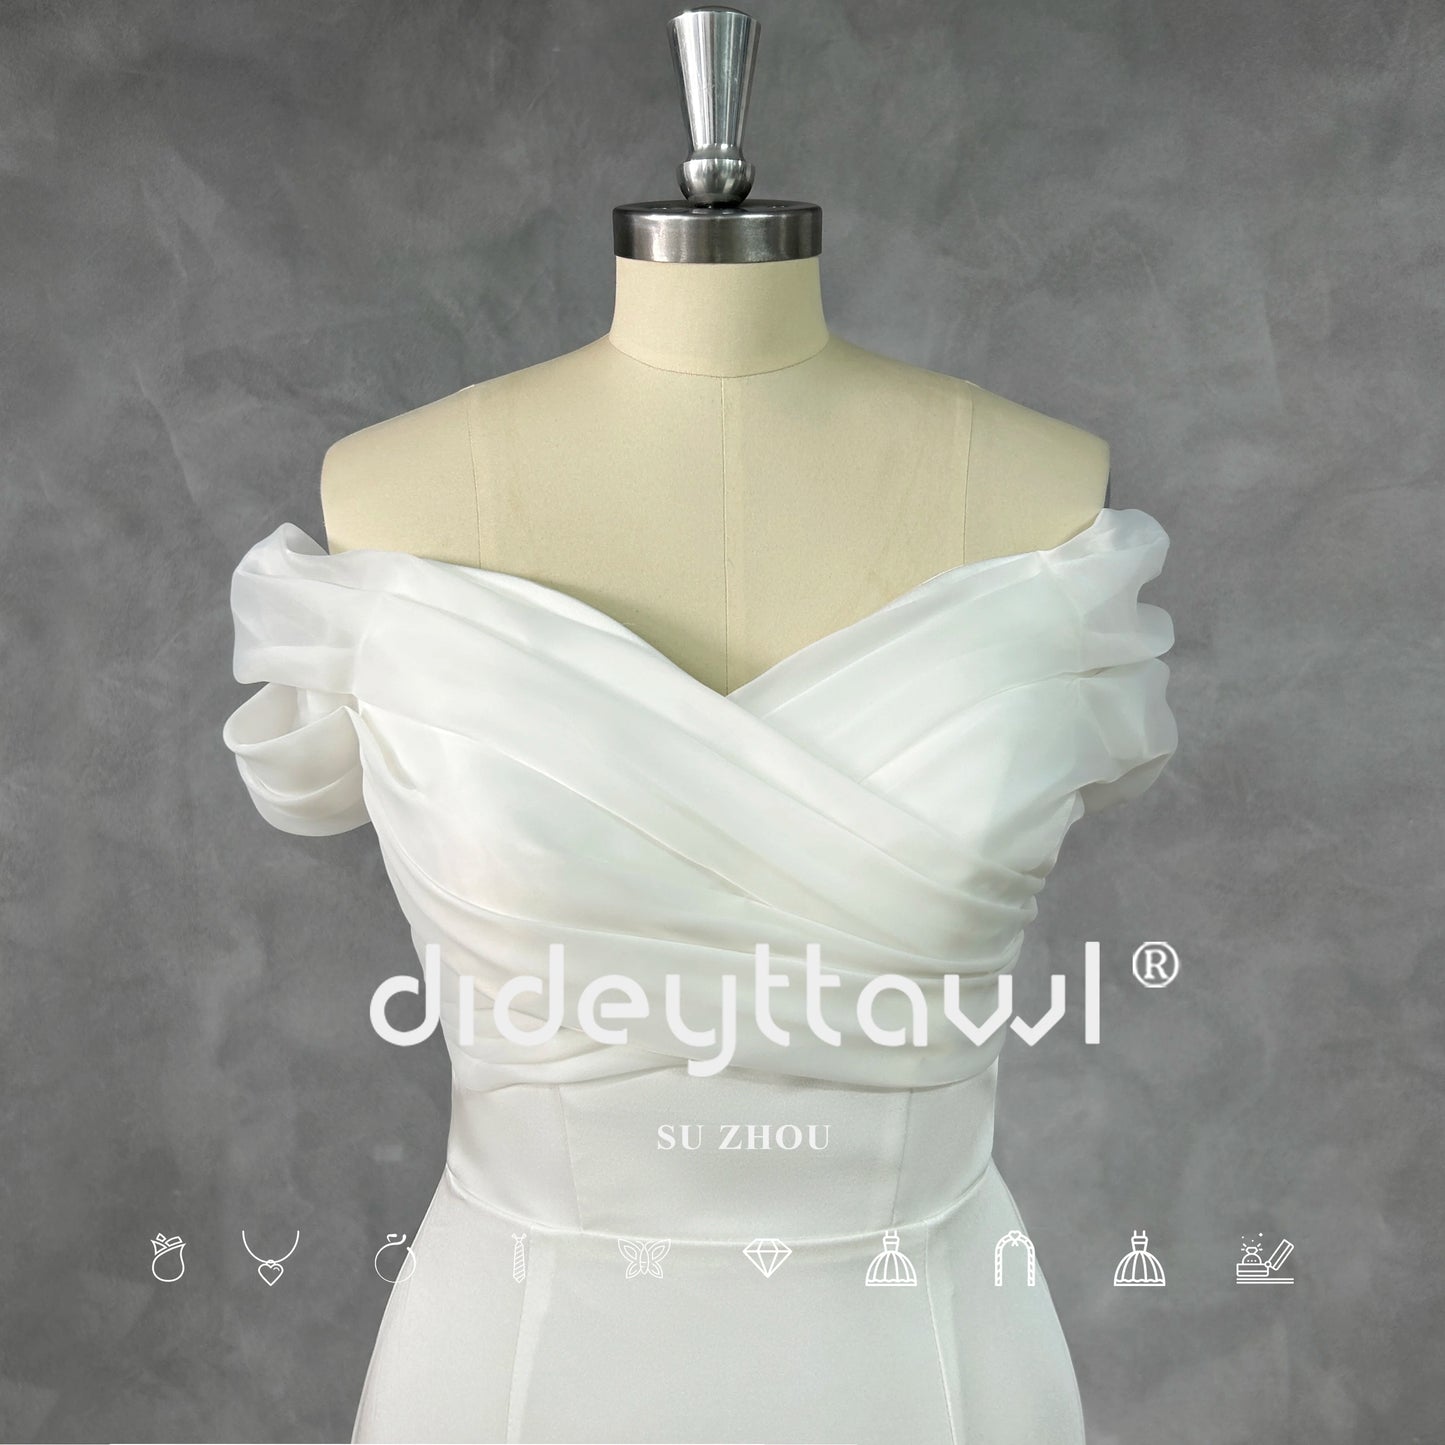 Dideyttawl Immagine reale semplice pieghe da spalline sirena abito da sposa con cerniera di allenamento in tribunale da treno da sposa abito da sposa